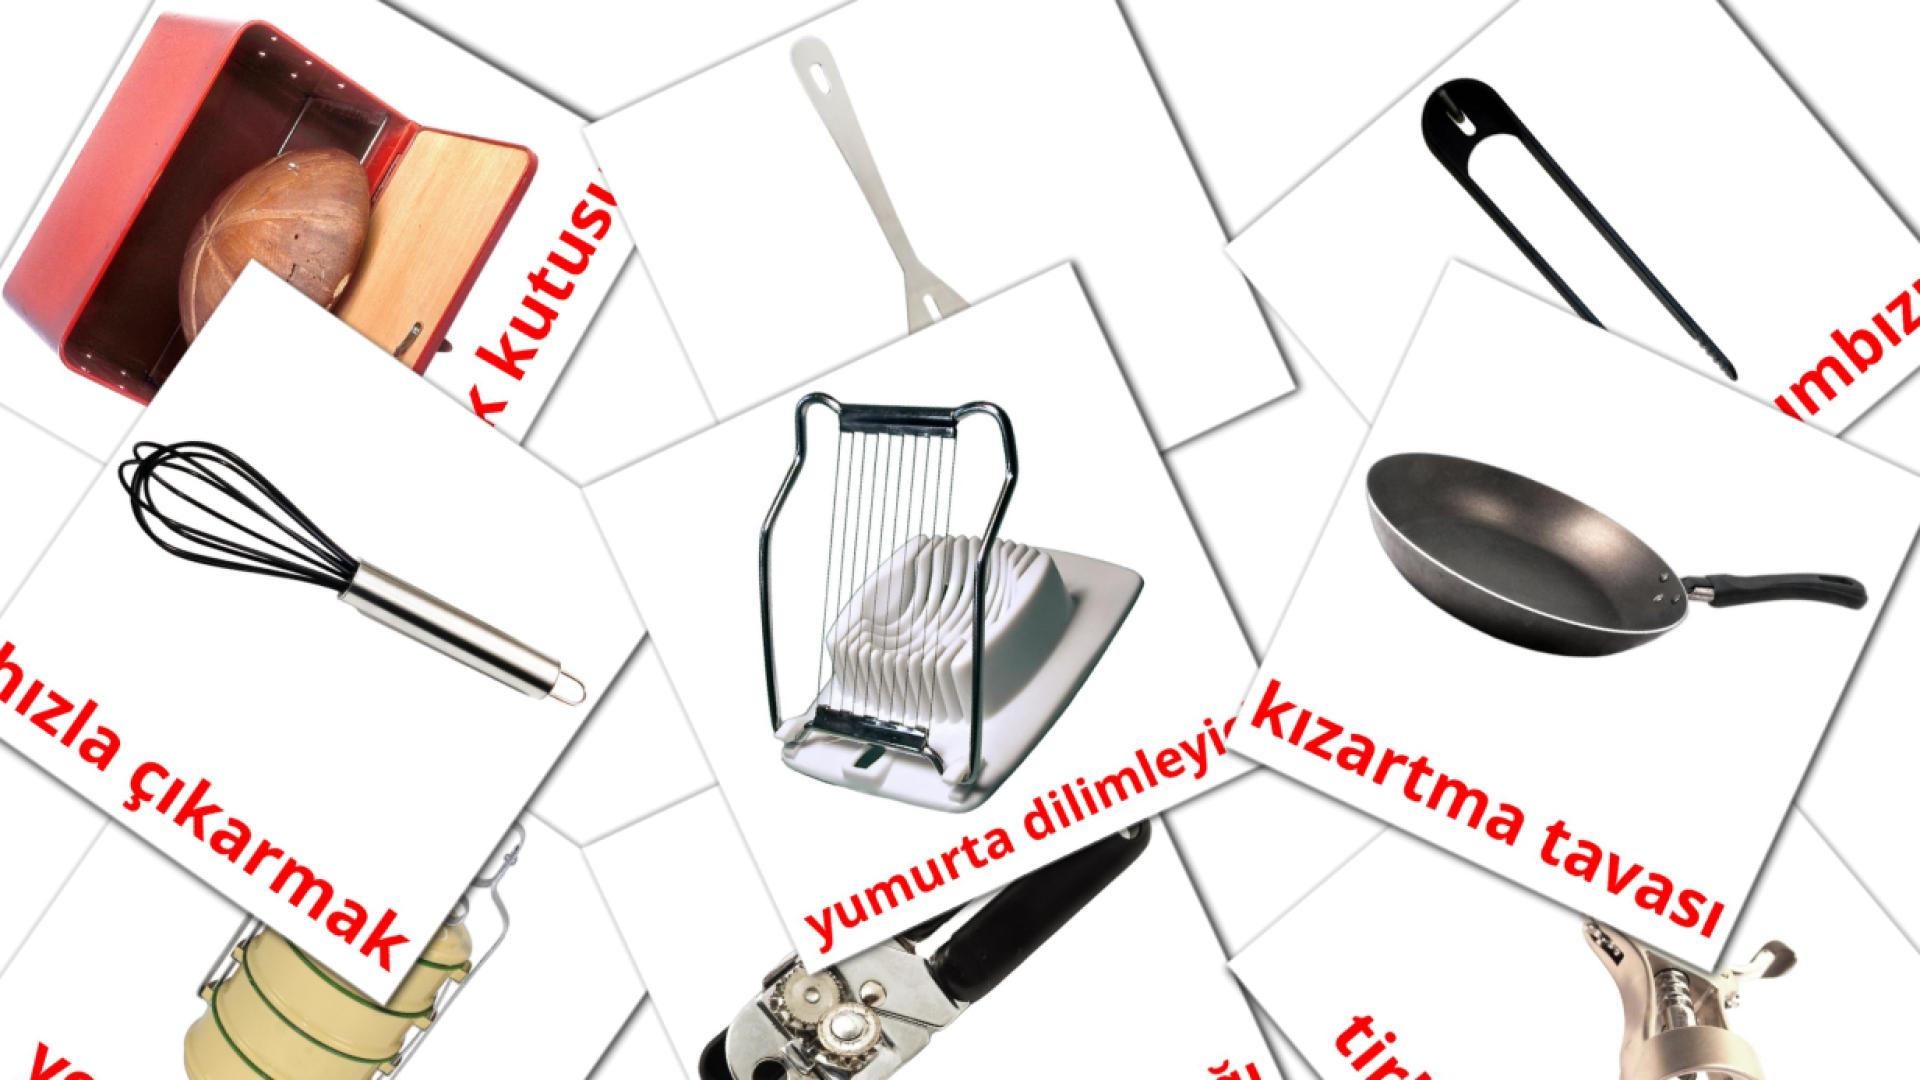 35 Kitchenware mutfak eşyaları  flashcards